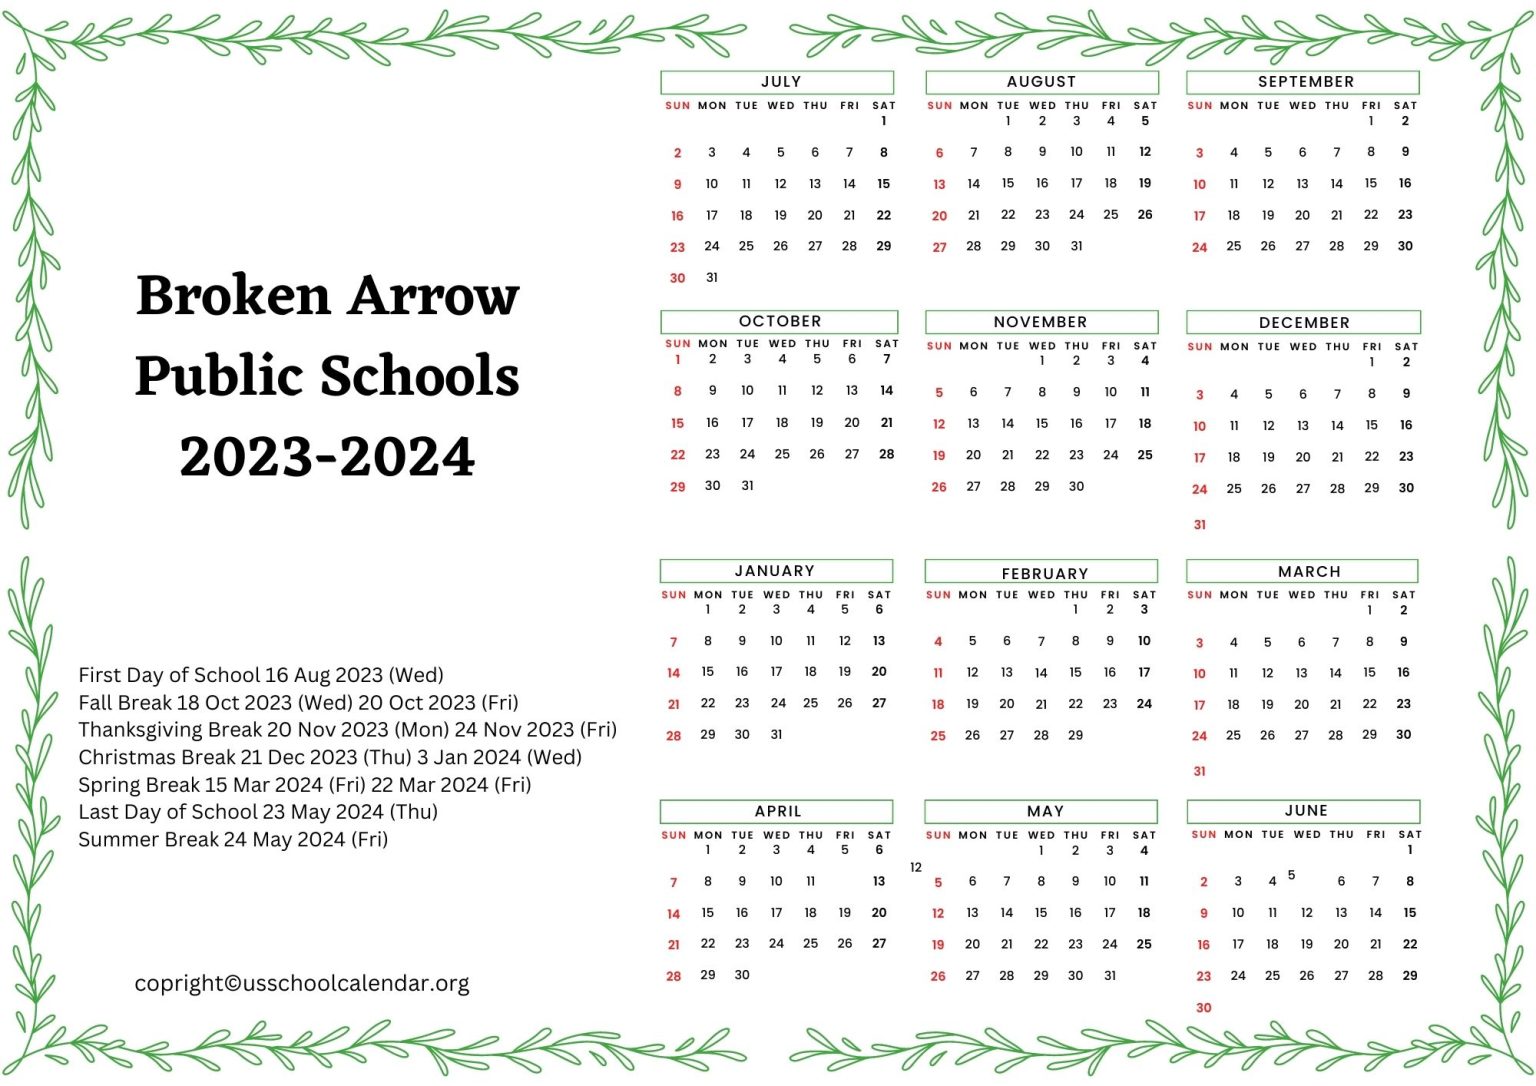 Broken Arrow Public Schools Calendar with Holidays 2023 2024